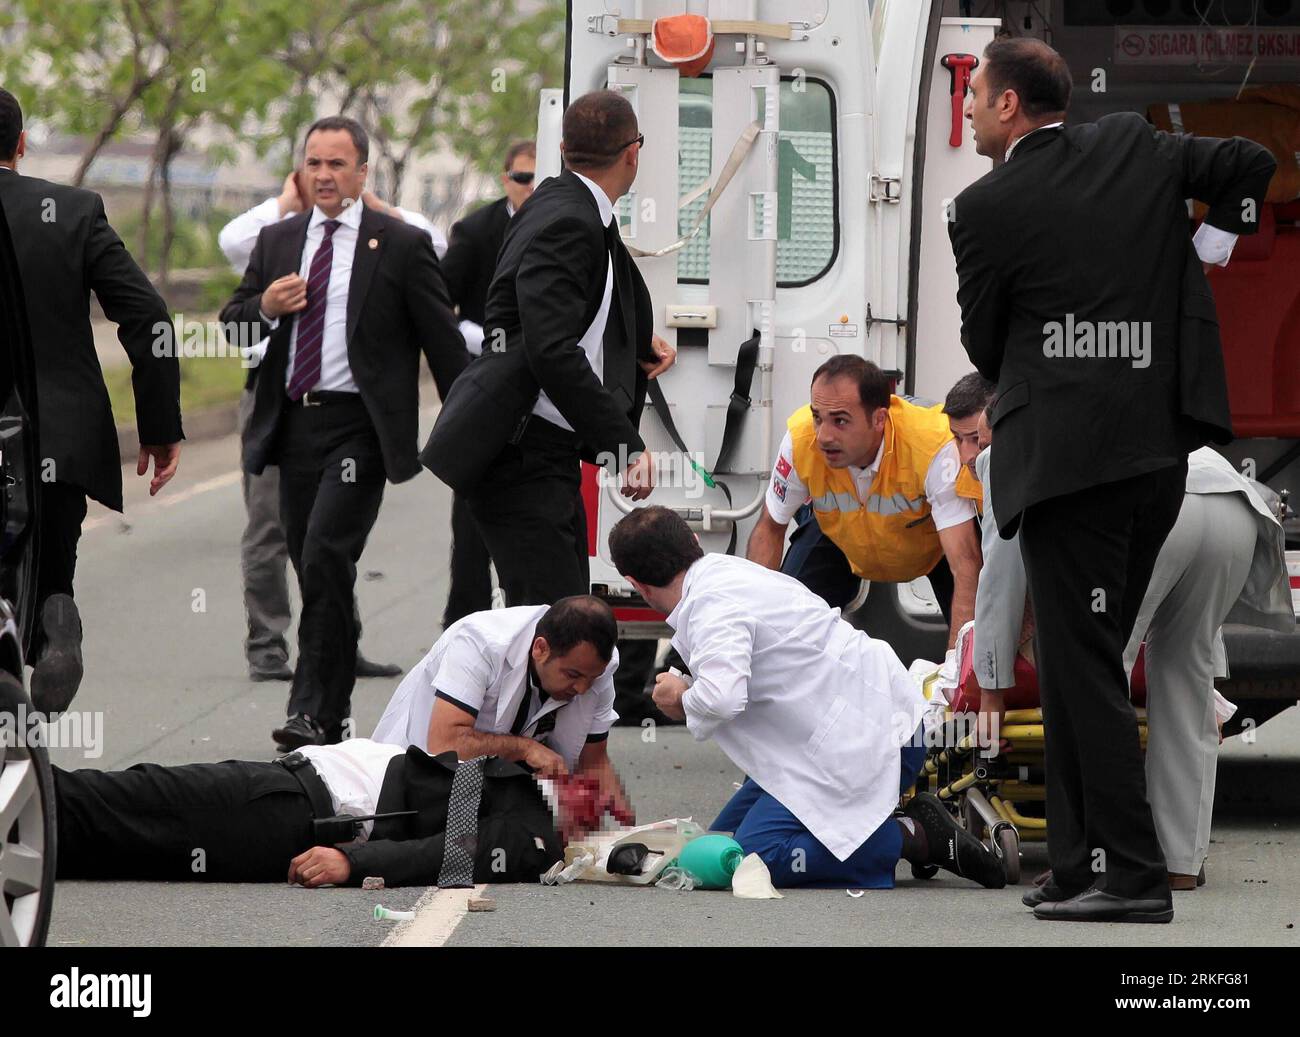 Bildnummer: 55417314 Datum: 31.05.2011 Copyright: imago/Xinhua (110531) -- HOPE (TÜRKEI), 31. Mai 2011 (Xinhua) -- medizinisches Personal leistet erste Hilfe für einen Verletzten während der Unruhen in der Stadt Hopa, Türkei, 31. Mai 2011. Ein Mann starb an einem Herzinfarkt und ein Sicherheitsbeamter wurde bei Straßenunruhen schwer verletzt, als sich der türkische Premierminister Tayyip Erdogan auf eine Wahlkampagne im Norden des Landes am Dienstag vorbereitete, sagten Medienberichte. (Xinhua/Anadolu) (wjd) TÜRKEI-WAHLKAMPFUNRUHEN PUBLICATIONxNOTxINxCHN Politik Wahl Parlamentswahl Türkei Unruhen Randale kbdig xng 2011 que Stockfoto